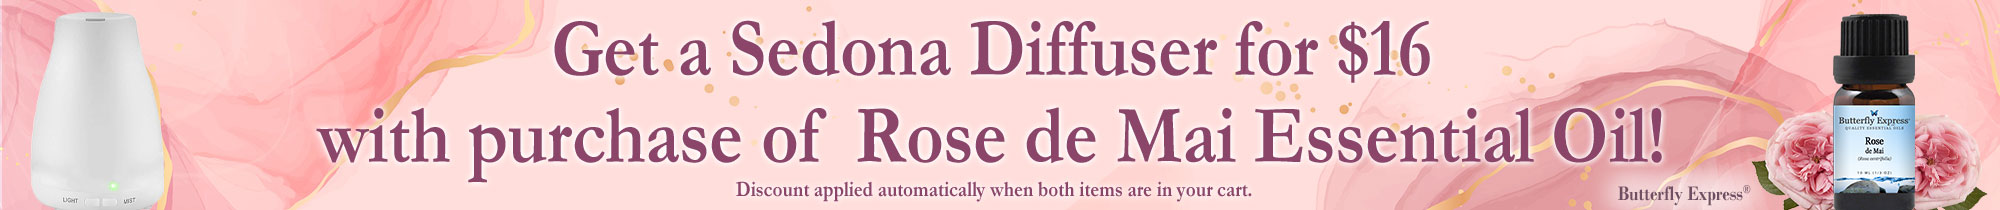 Rose Diffuser Special